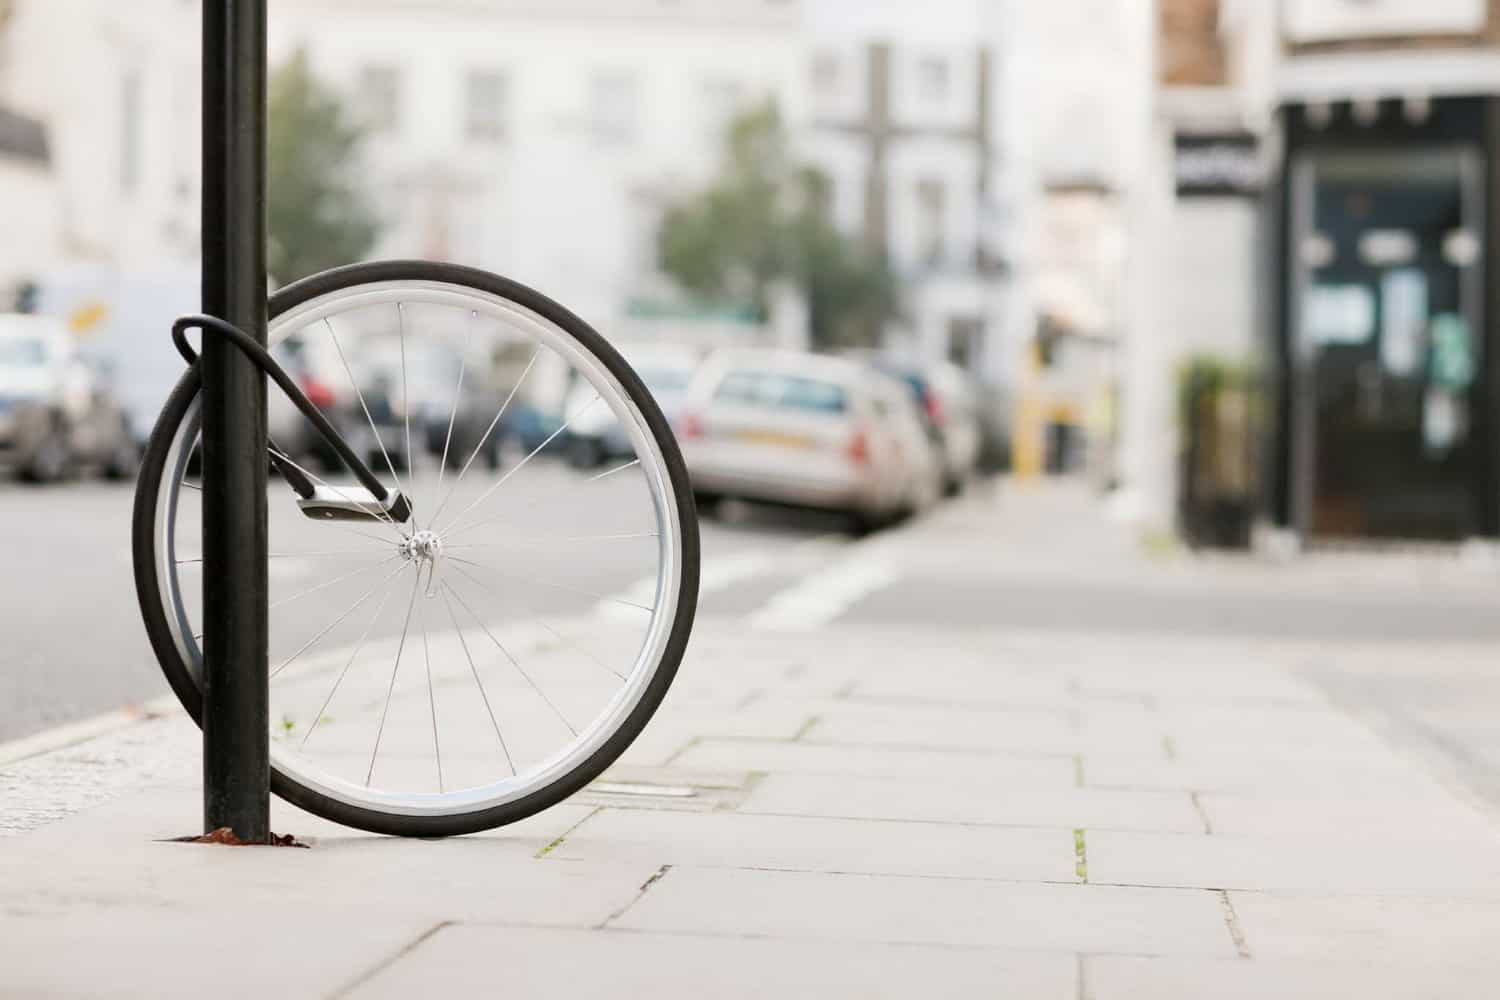 Panduan jenis dan cara memasang gembok sepeda yang aman